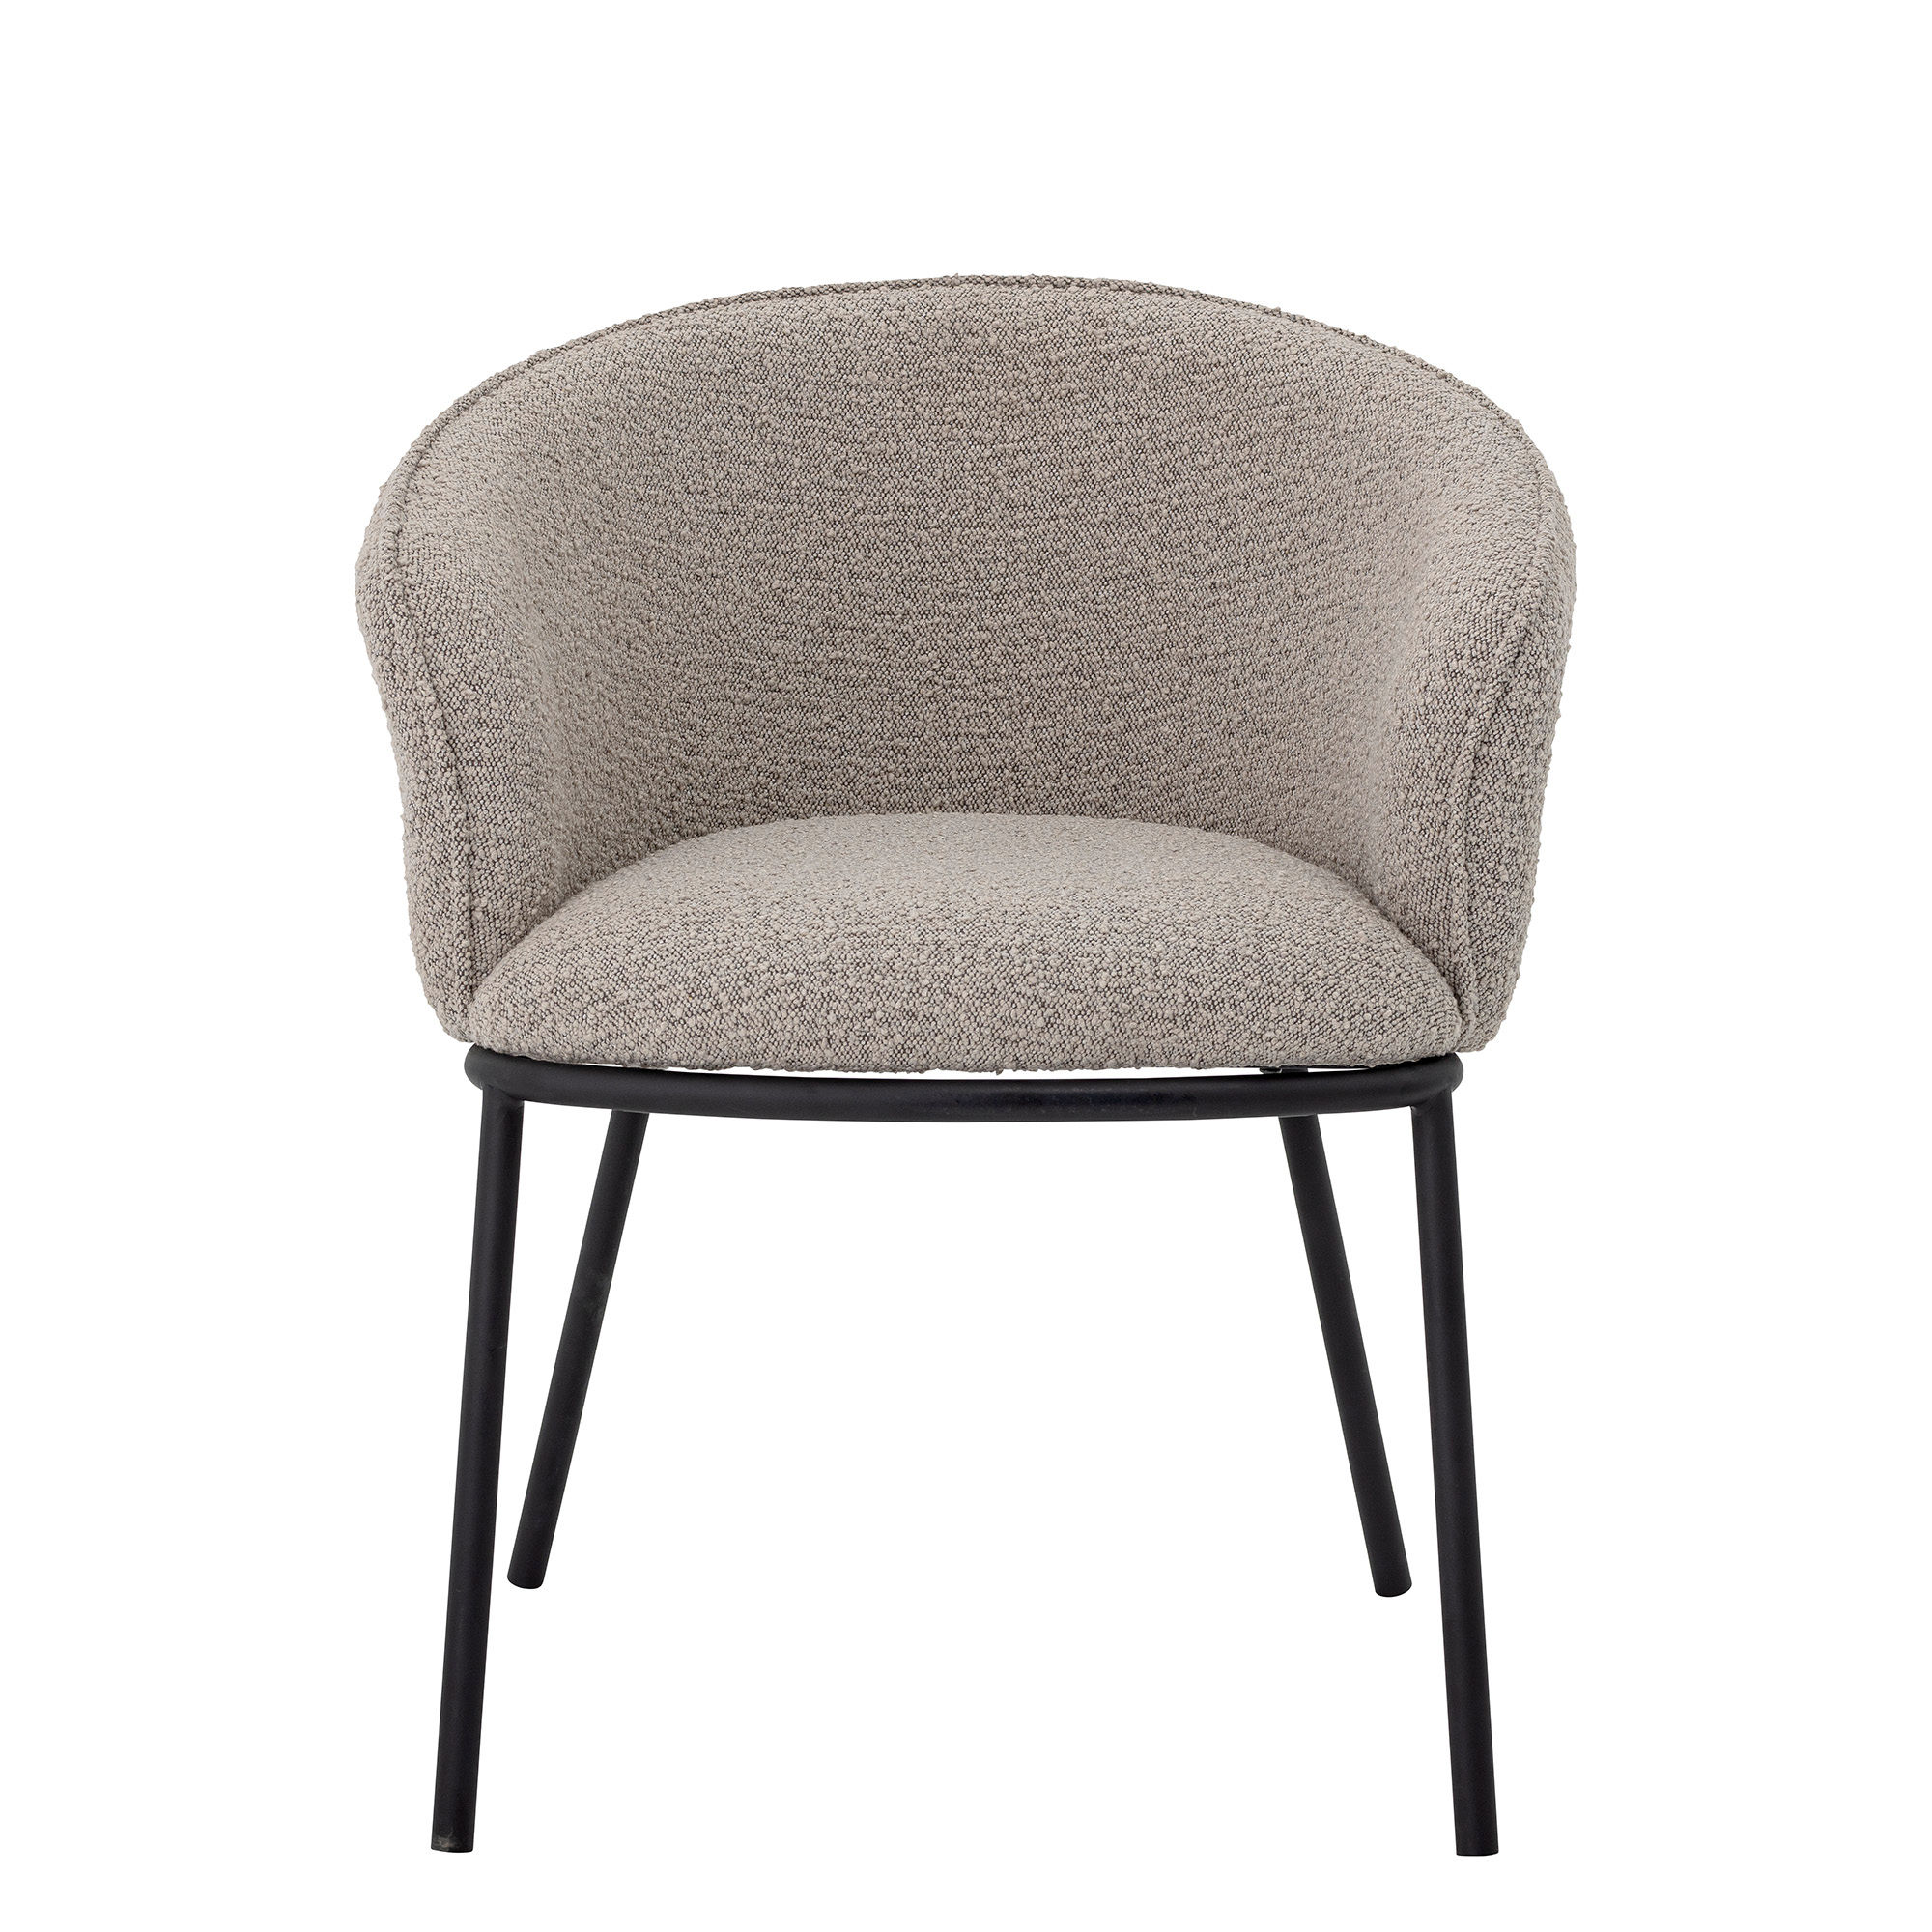 #1 - BLOOMINGVILLE Cortone spisebordsstol, m. armlæn - grå polyester og sort metal